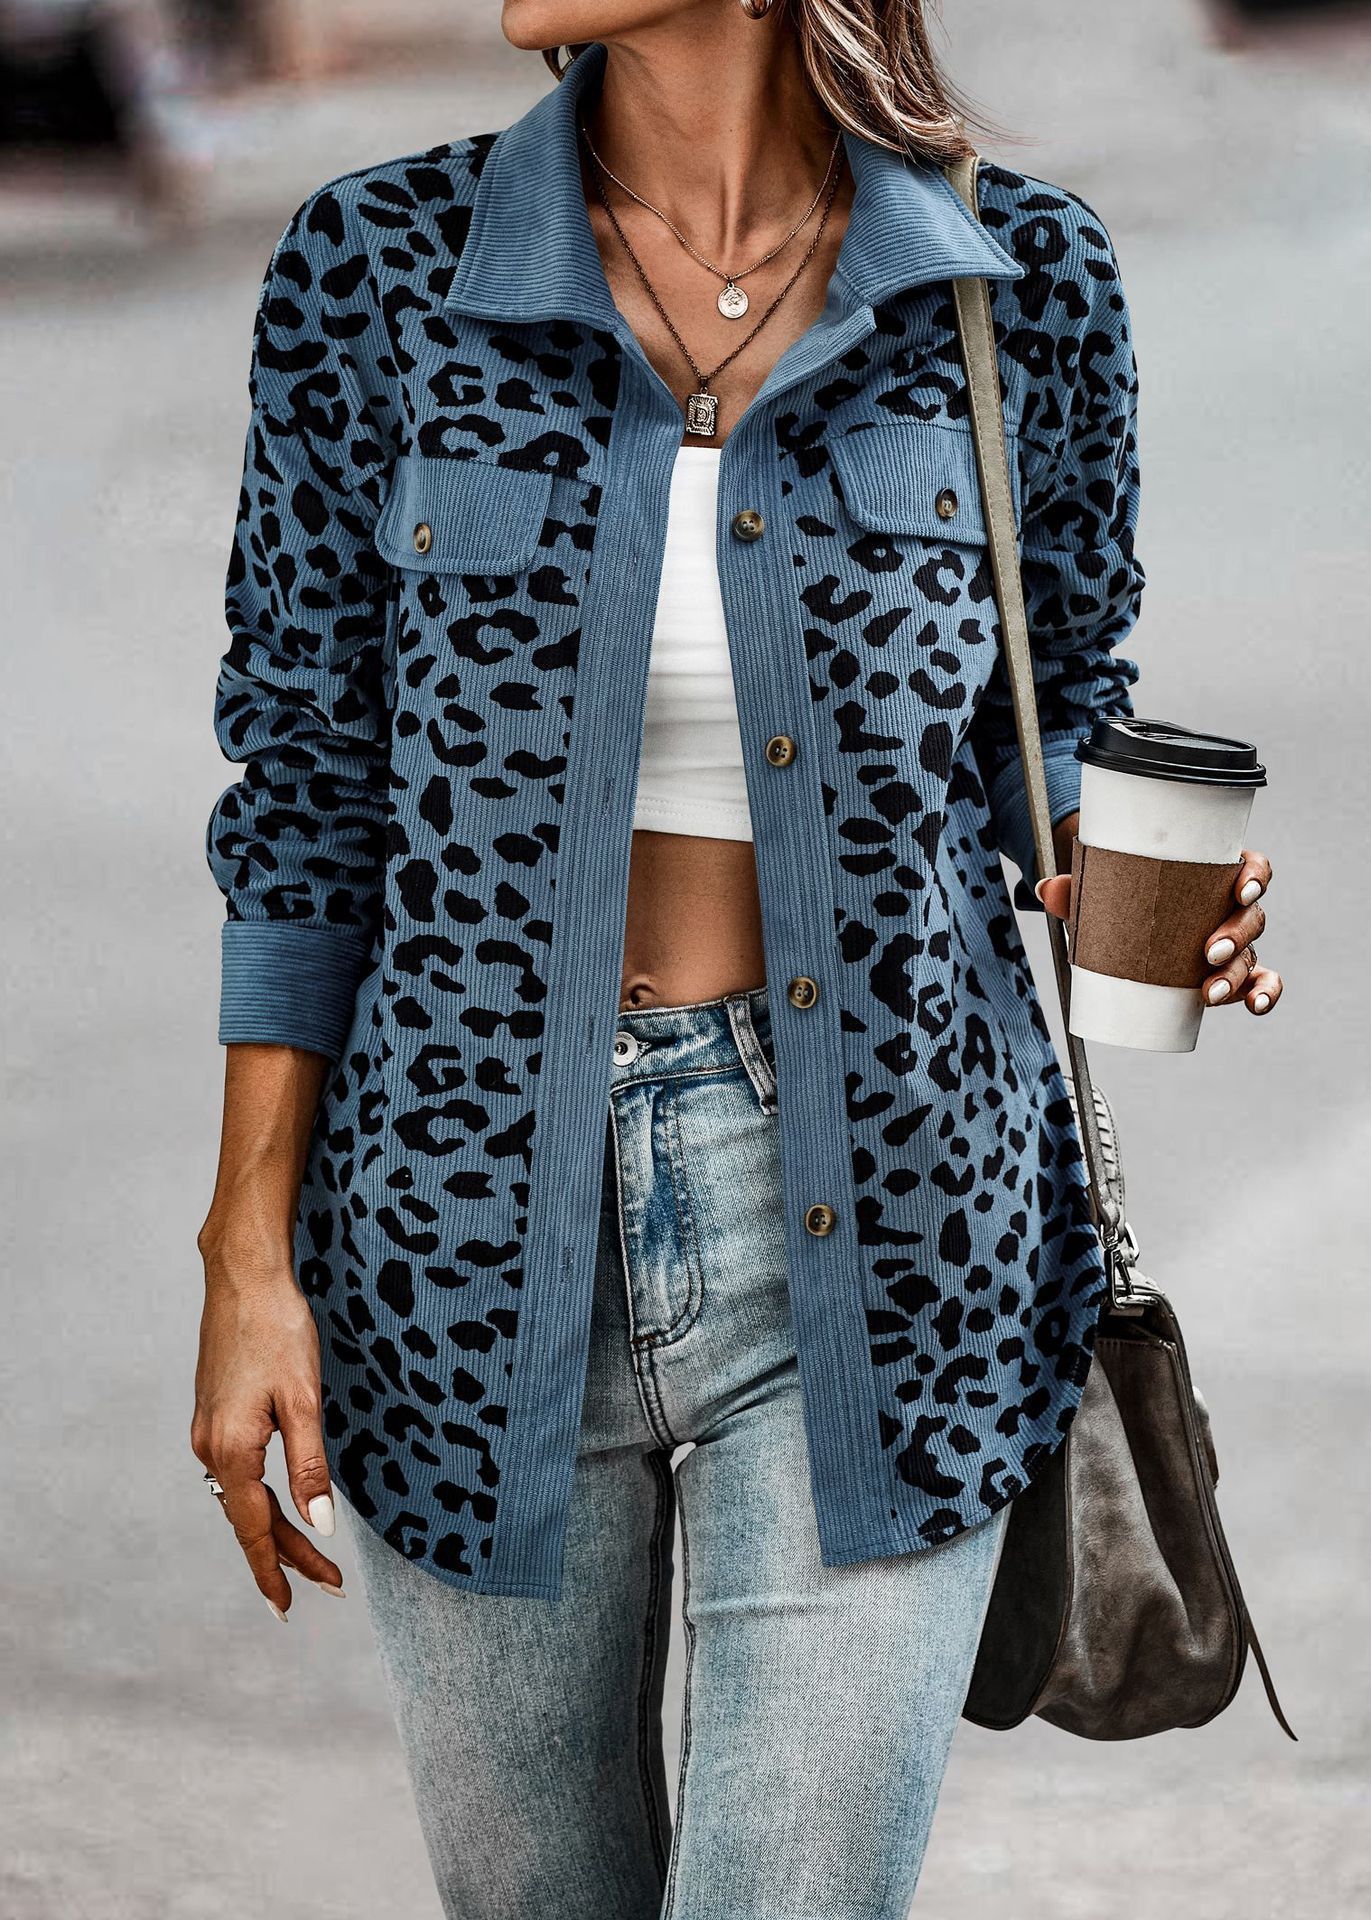 Colinskeirs™ Corduroy leopard shirt jacket-colinskeirs